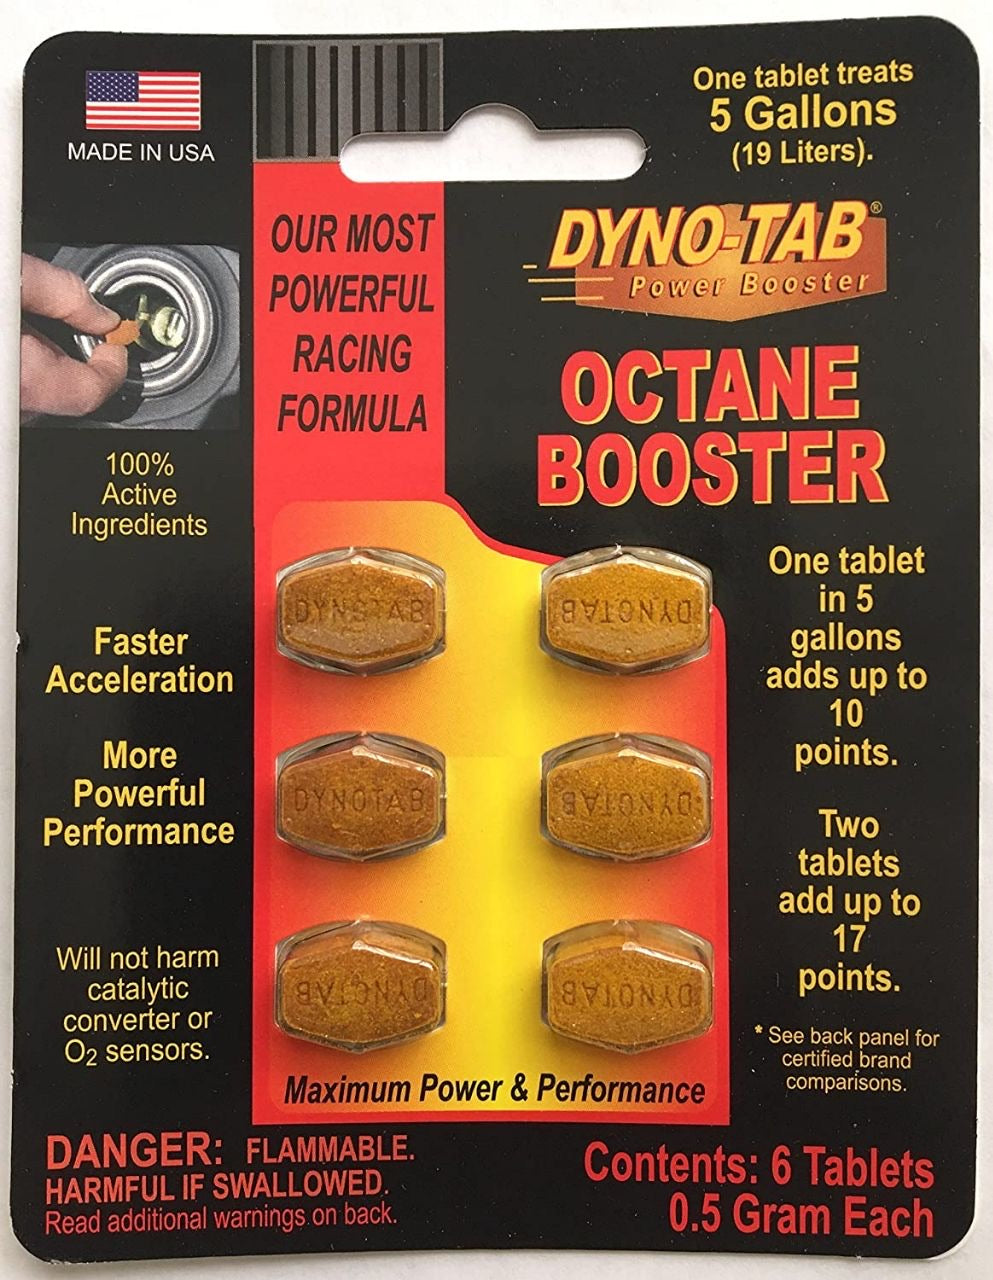 Dyno-tab Octane Booster